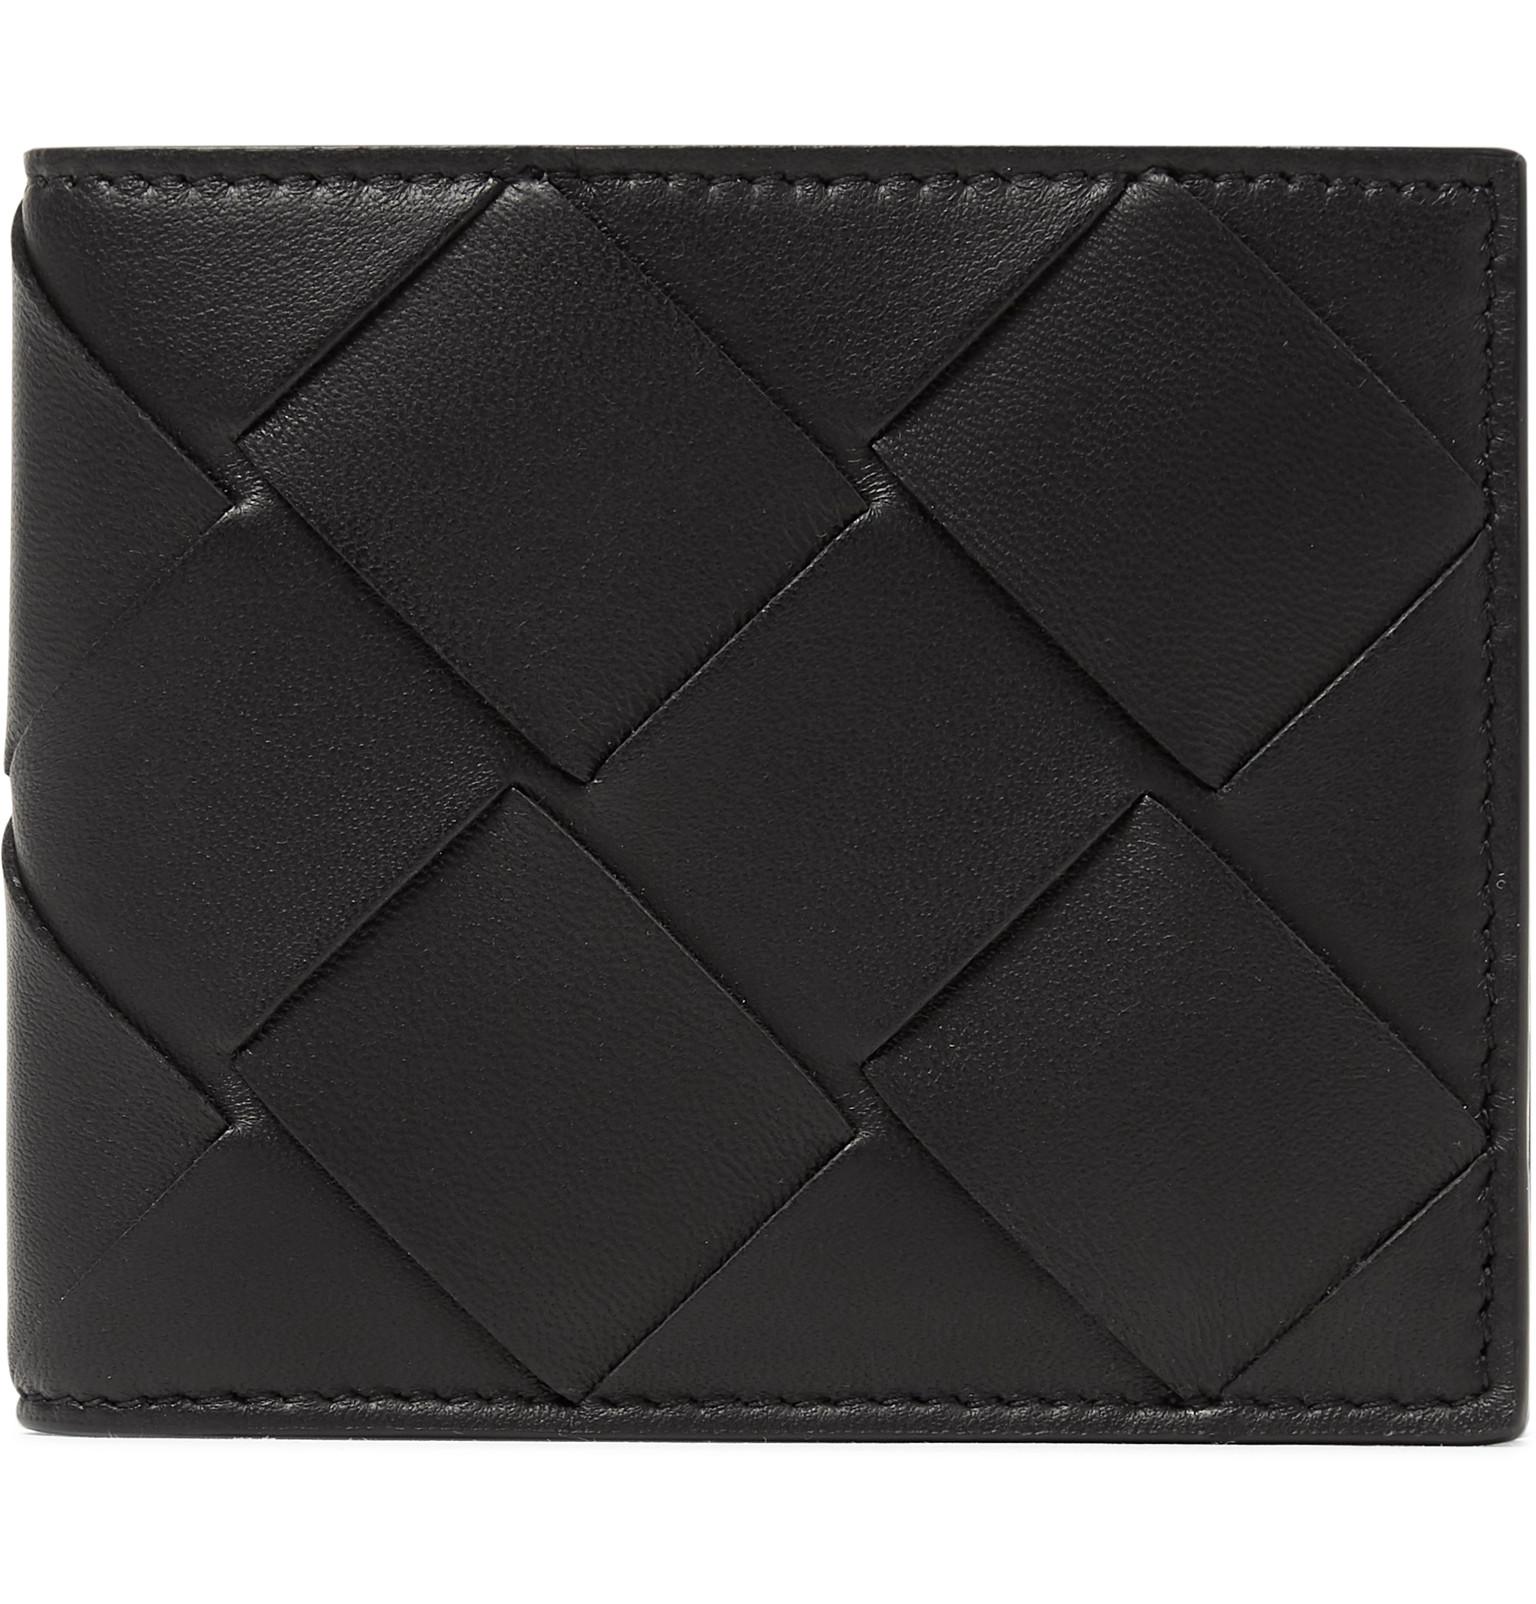 Bottega Veneta Intrecciato Leather Billfold Wallet in Black for Men - Lyst